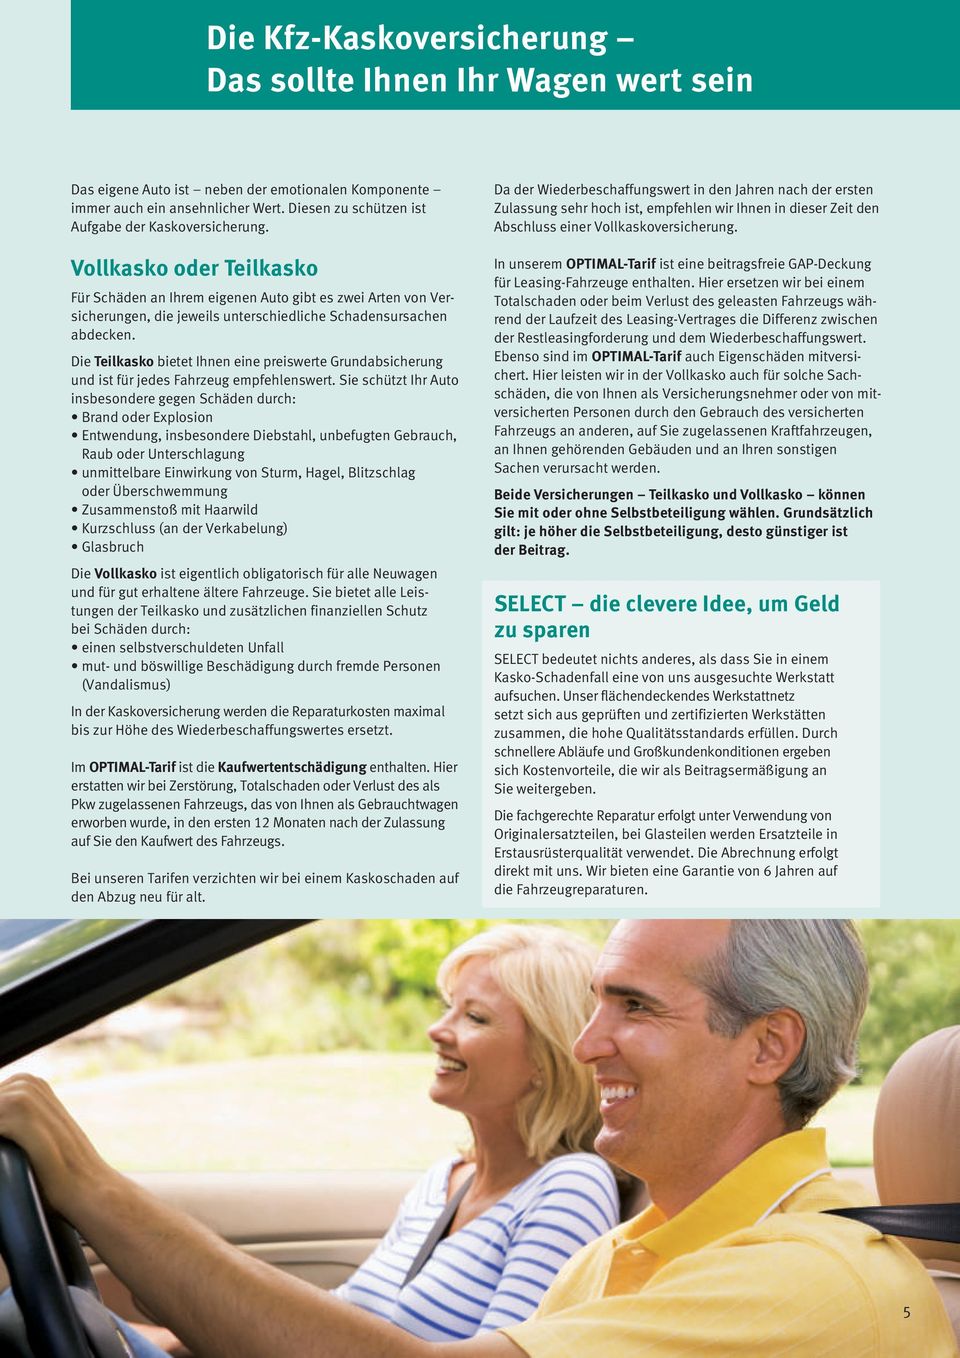 Vollkasko oder Teilkasko Für Schäden an Ihrem eigenen Auto gibt es zwei Arten von Versicherungen, die jeweils unterschiedliche Schadens ursachen abdecken.